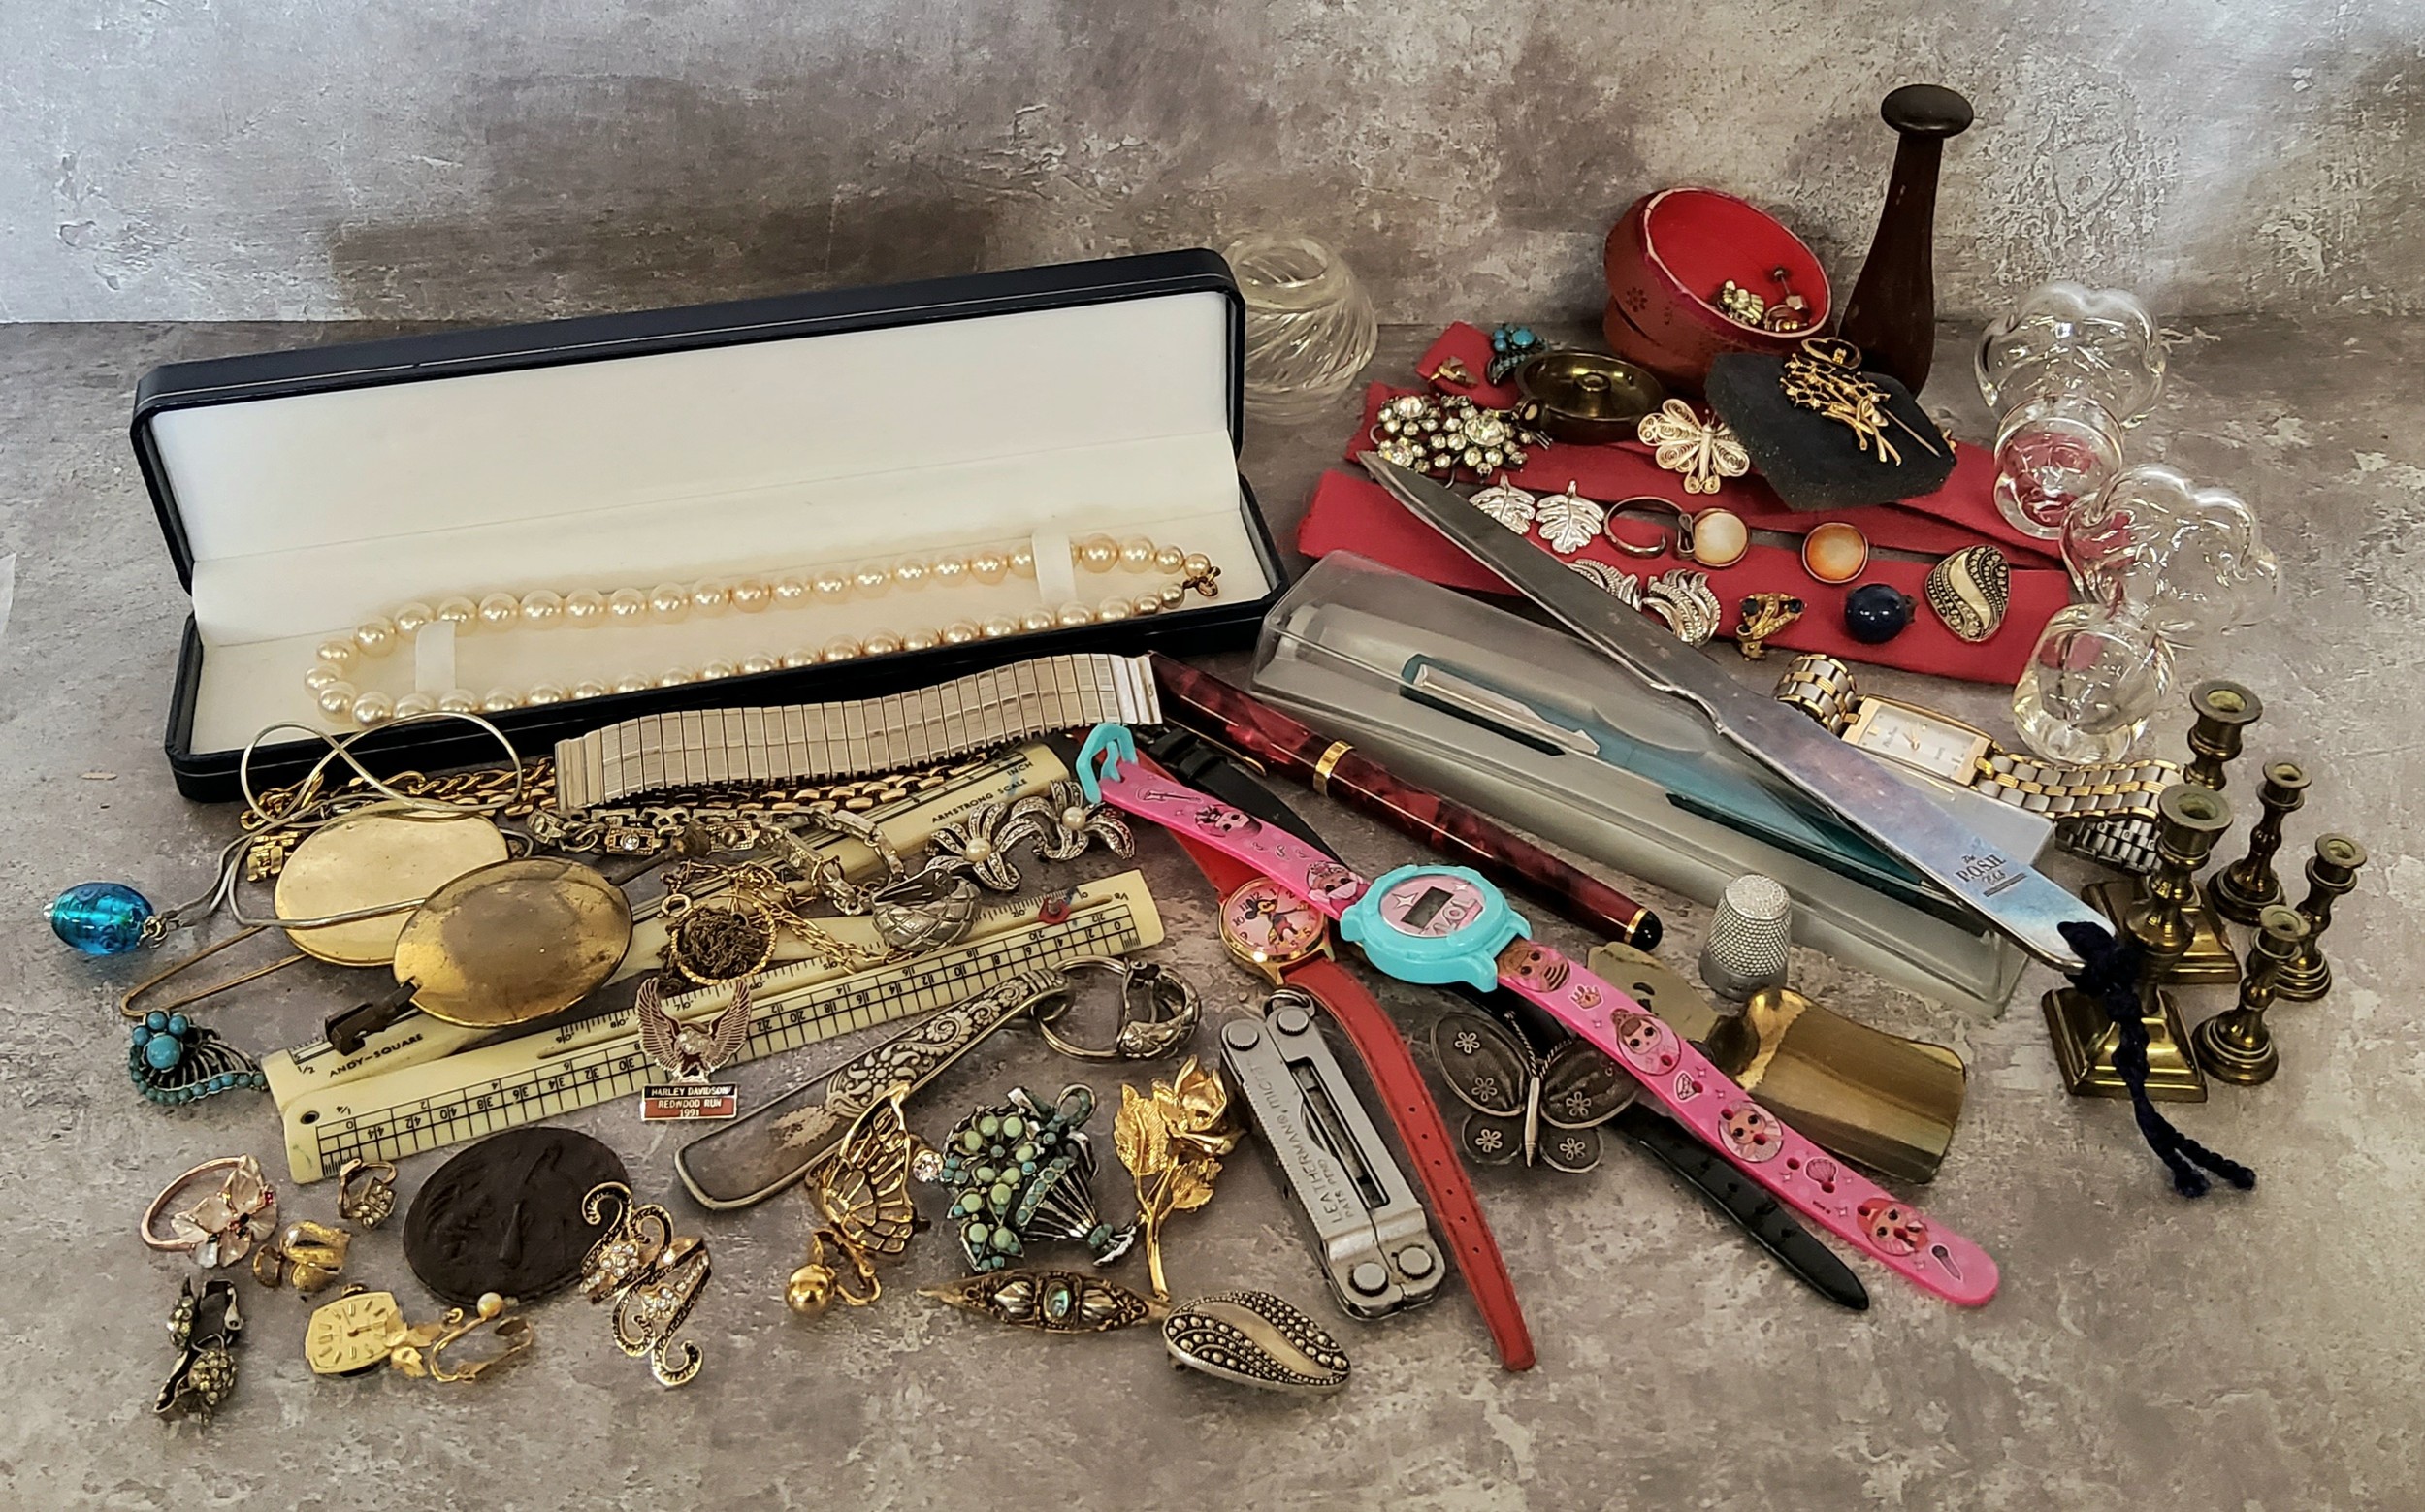 Bijouterie - silver filigree butterfly brooch; clip on earrings; a Parker pen; miniature brass dolls